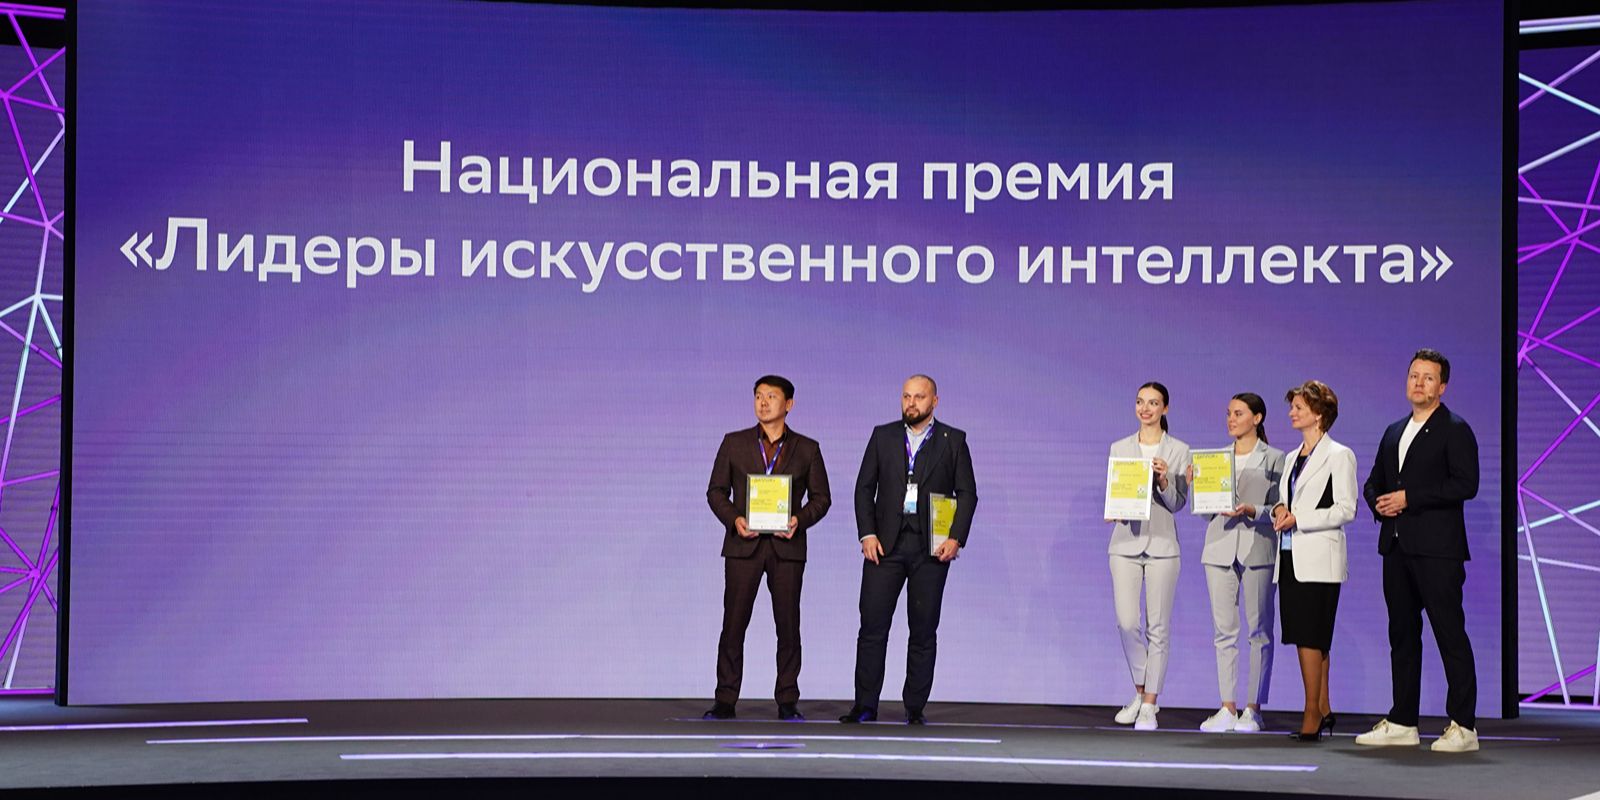 Московский проект получил спецприз премии «Лидеры искусственного интеллекта»